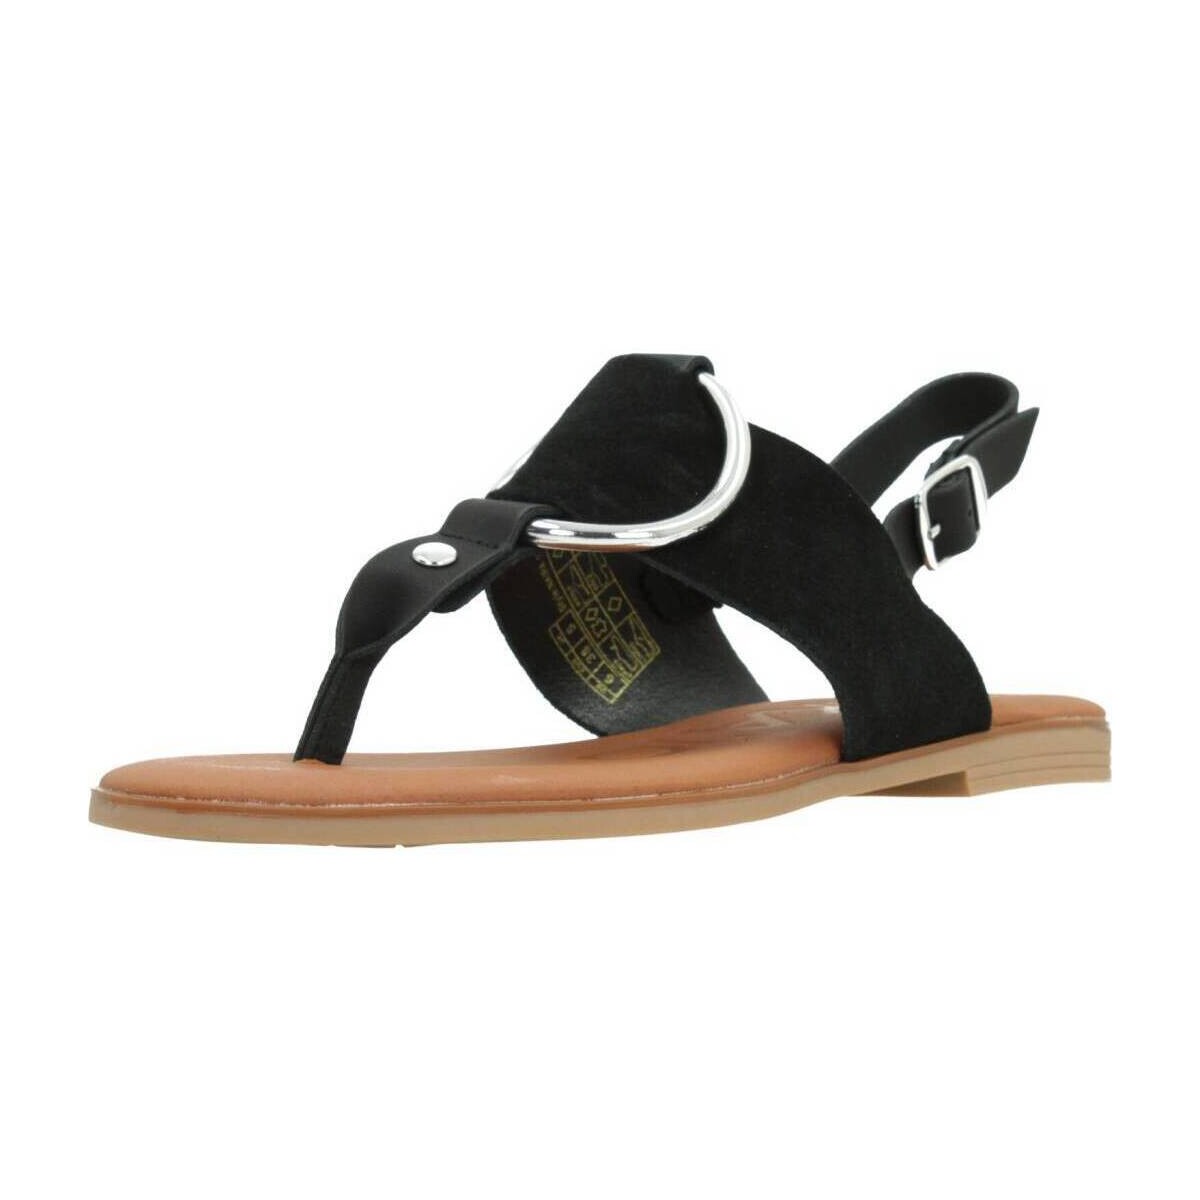 Παπούτσια Γυναίκα Σανδάλια / Πέδιλα Chika 10 NAIRA 12 Black